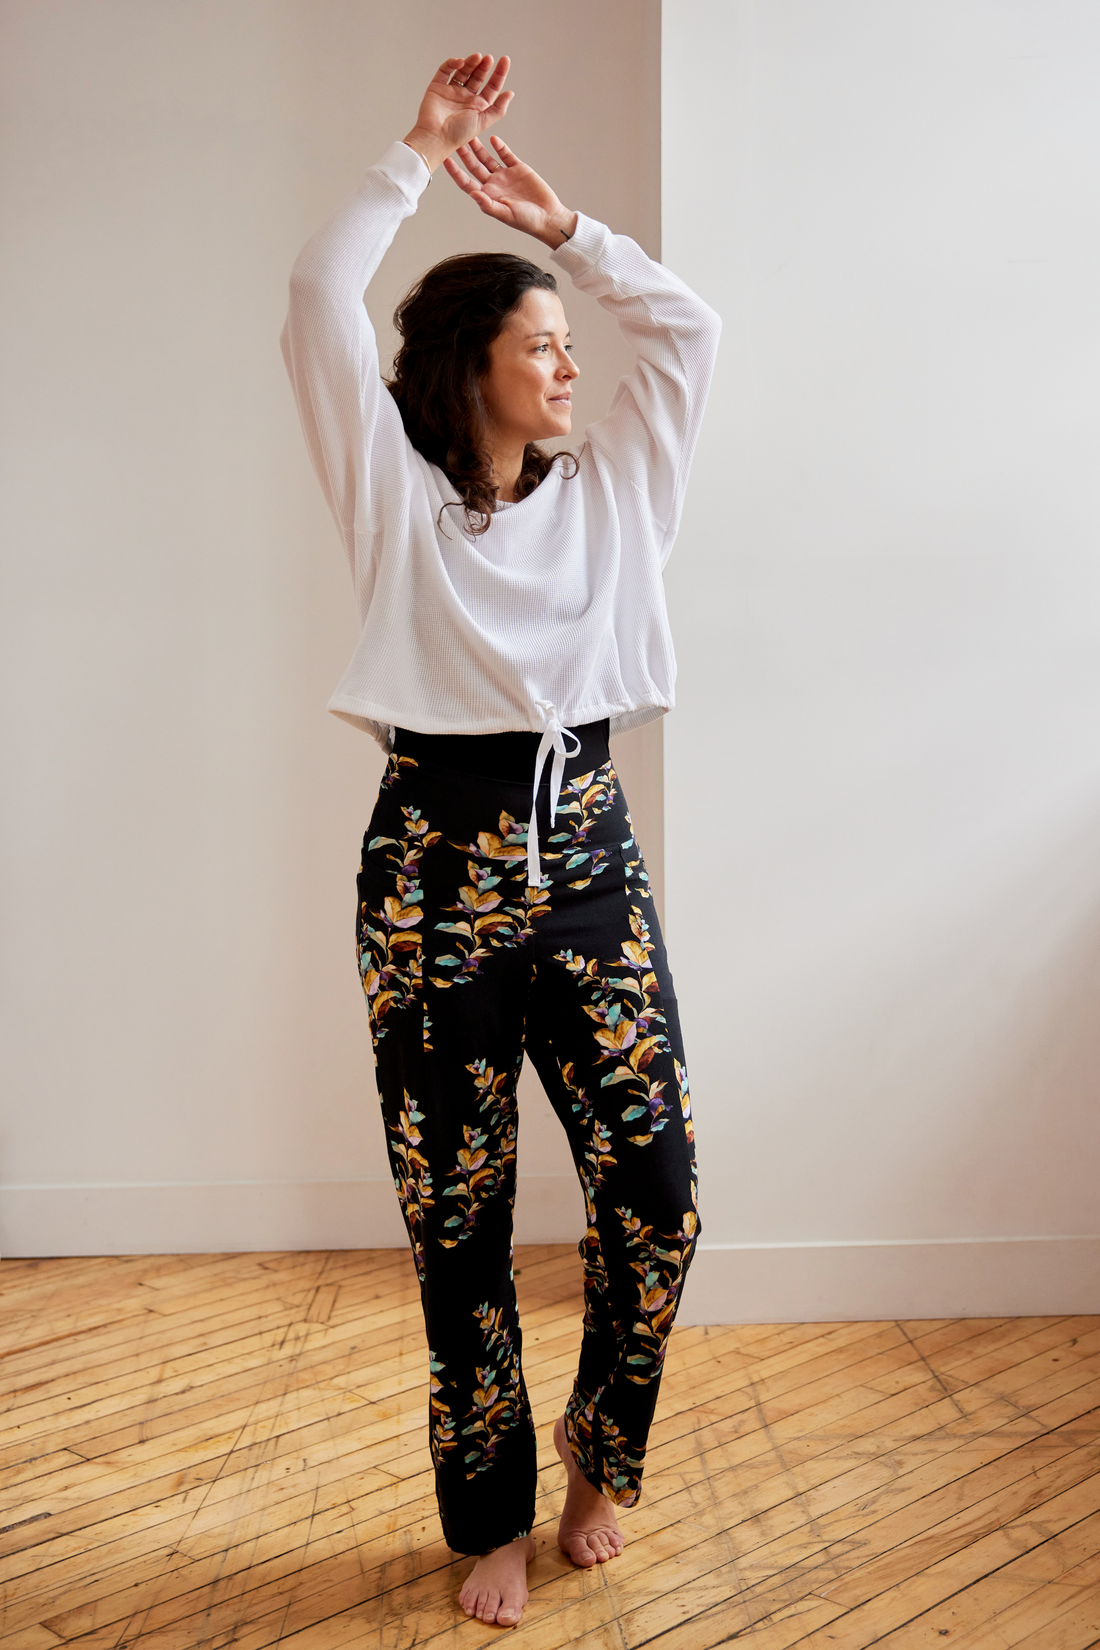 Pantalon tout-aller à motifs avec poches pour femmes fabriqué au Québec.